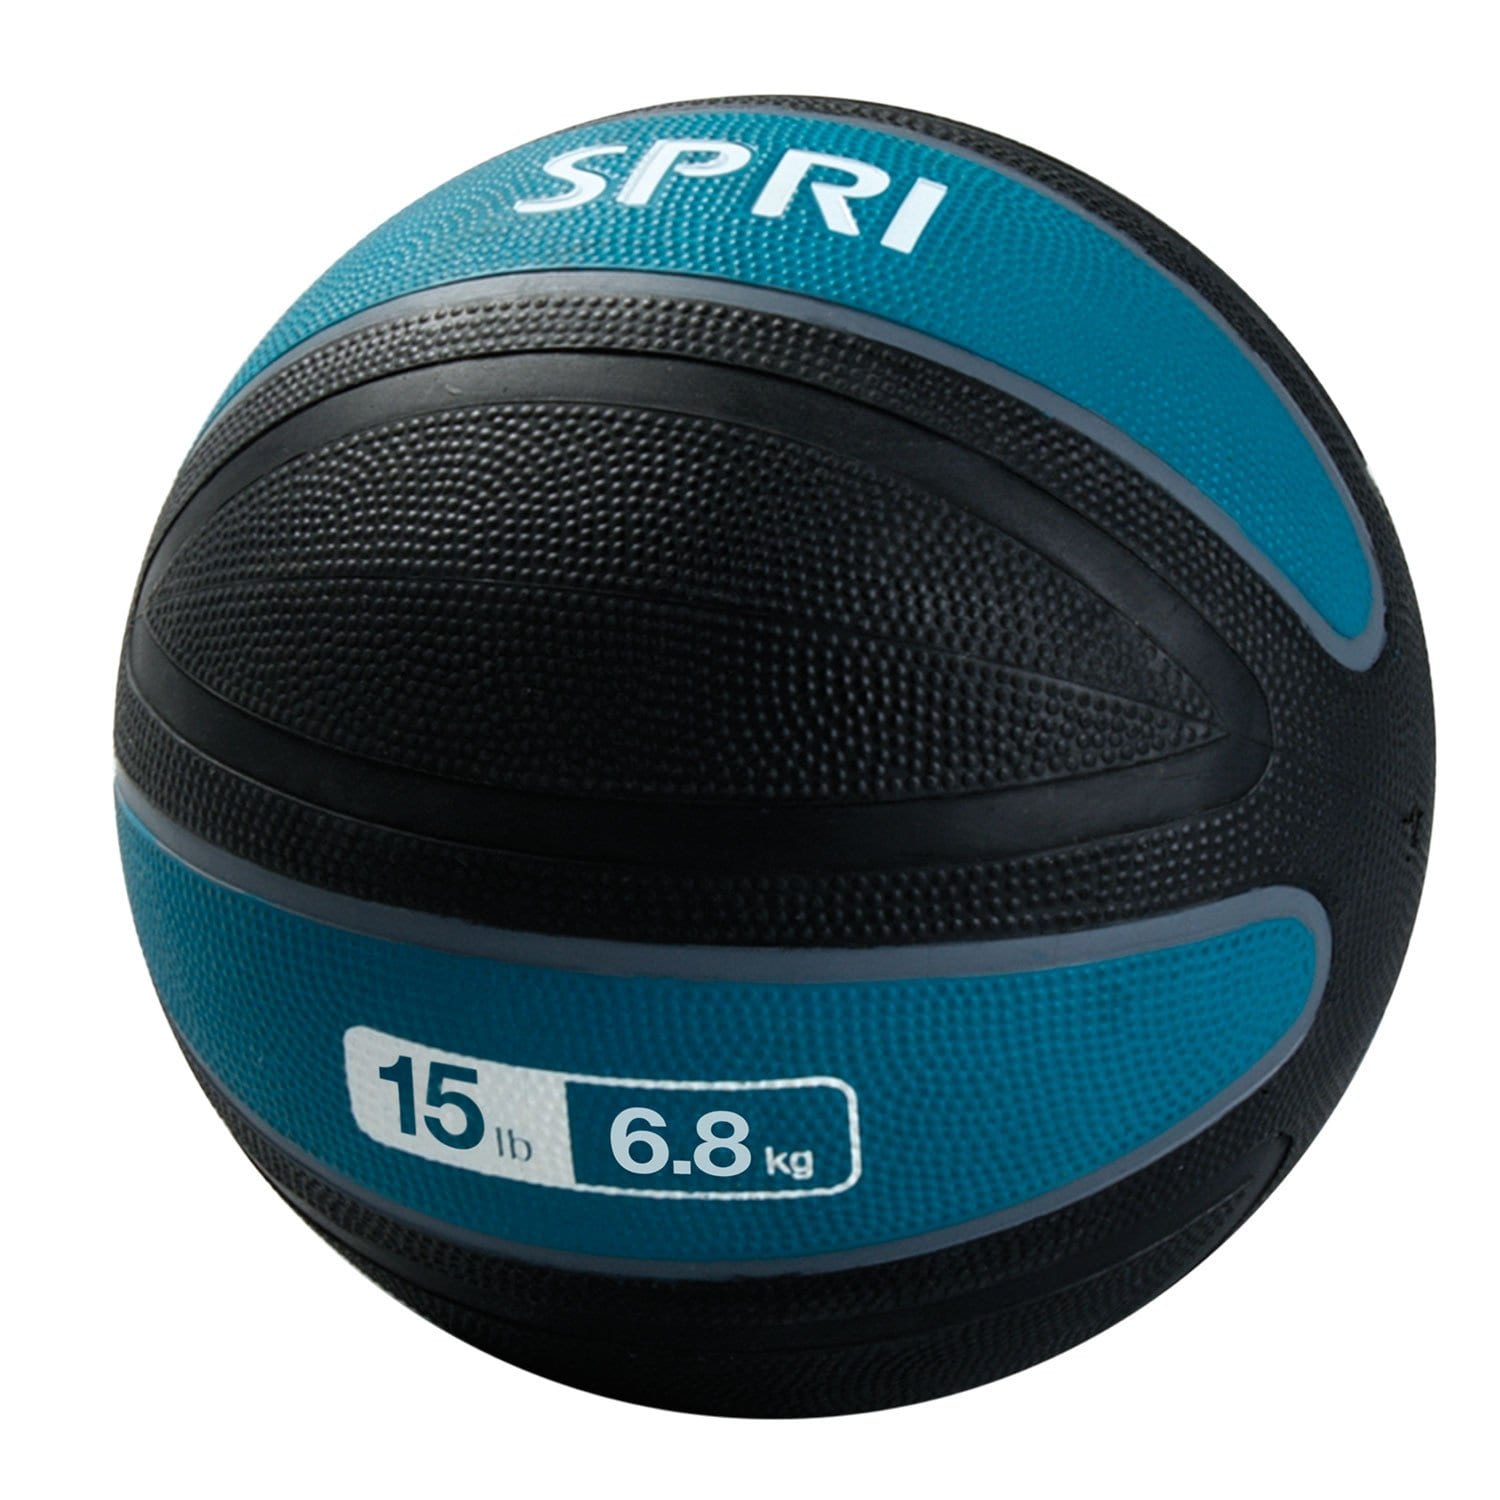 SPRI Xerball Medicine Ball – 15lb